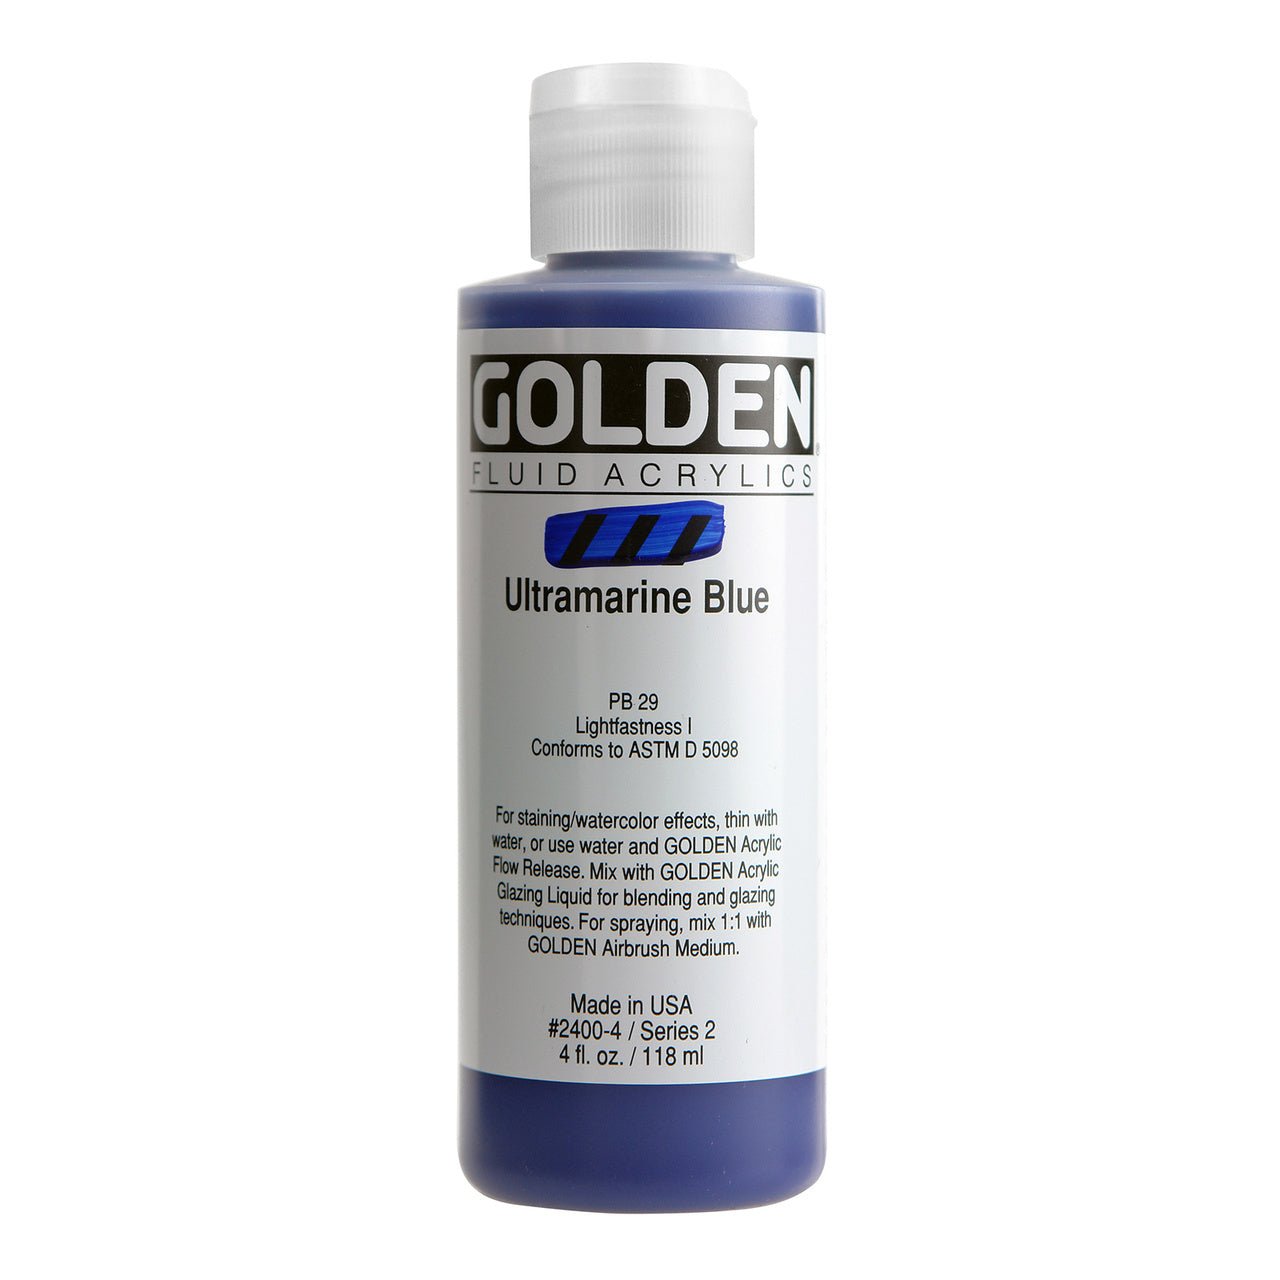 Golden Fluid Acrylic Ultramarine Blue 4 oz - merriartist.com